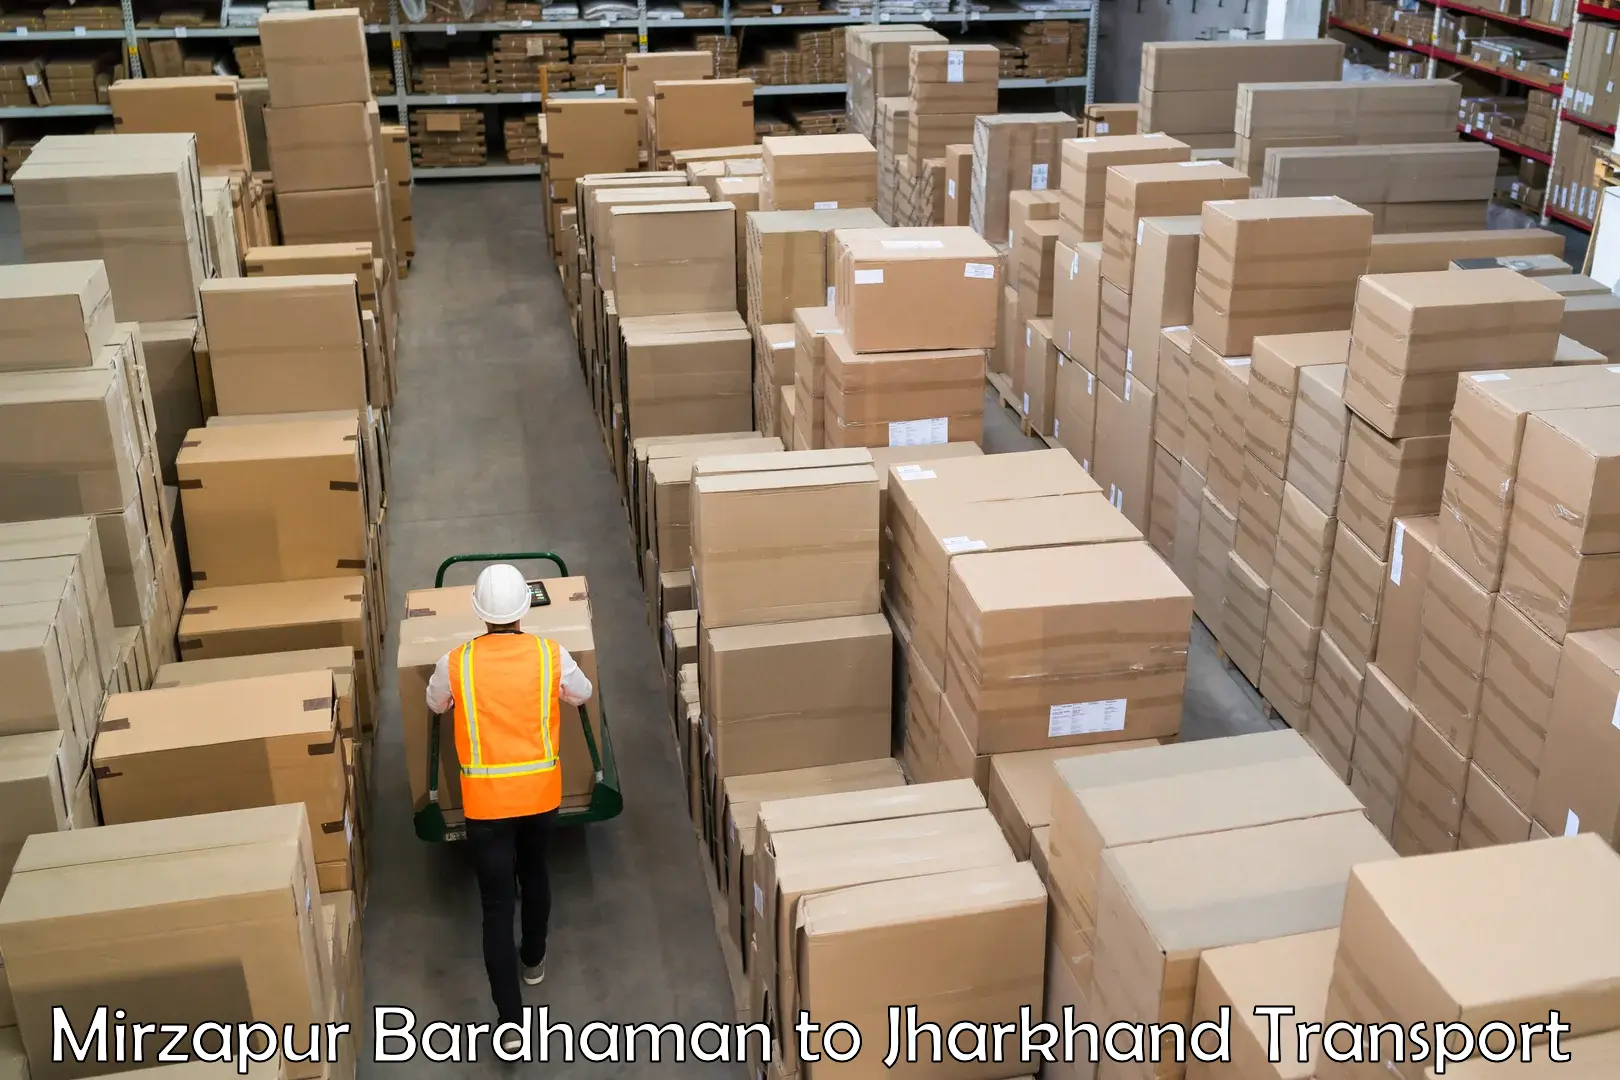 Furniture transport service Mirzapur Bardhaman to Chandankiyari